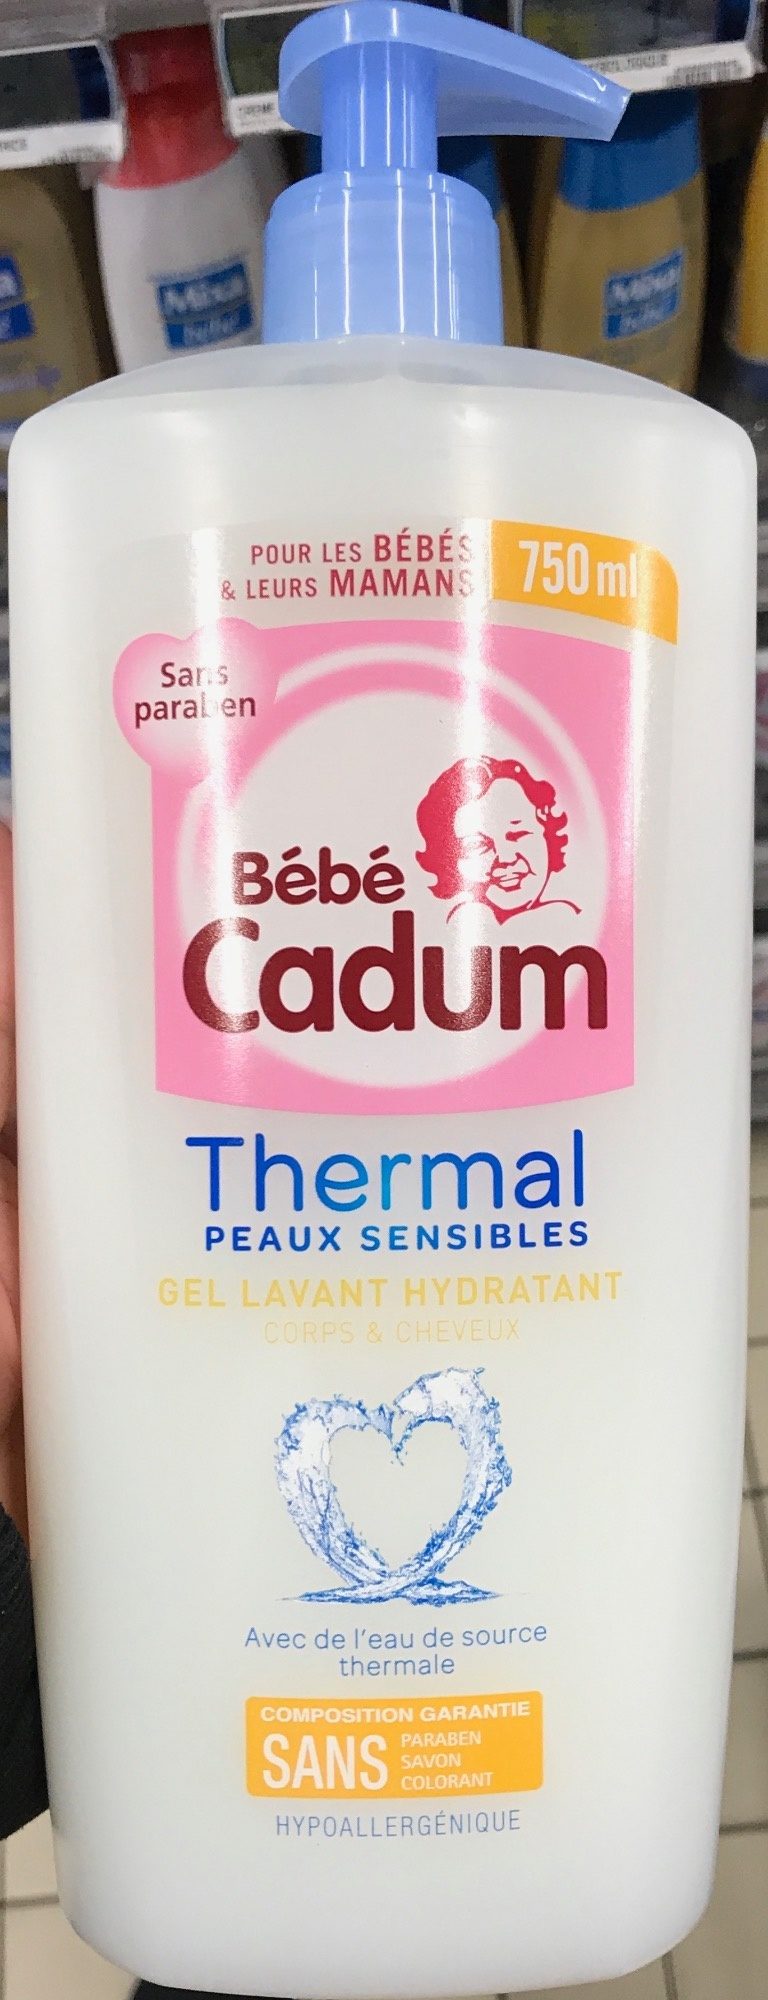 Thermal Peaux Sensibles Gel lavant hydratant - Product - fr